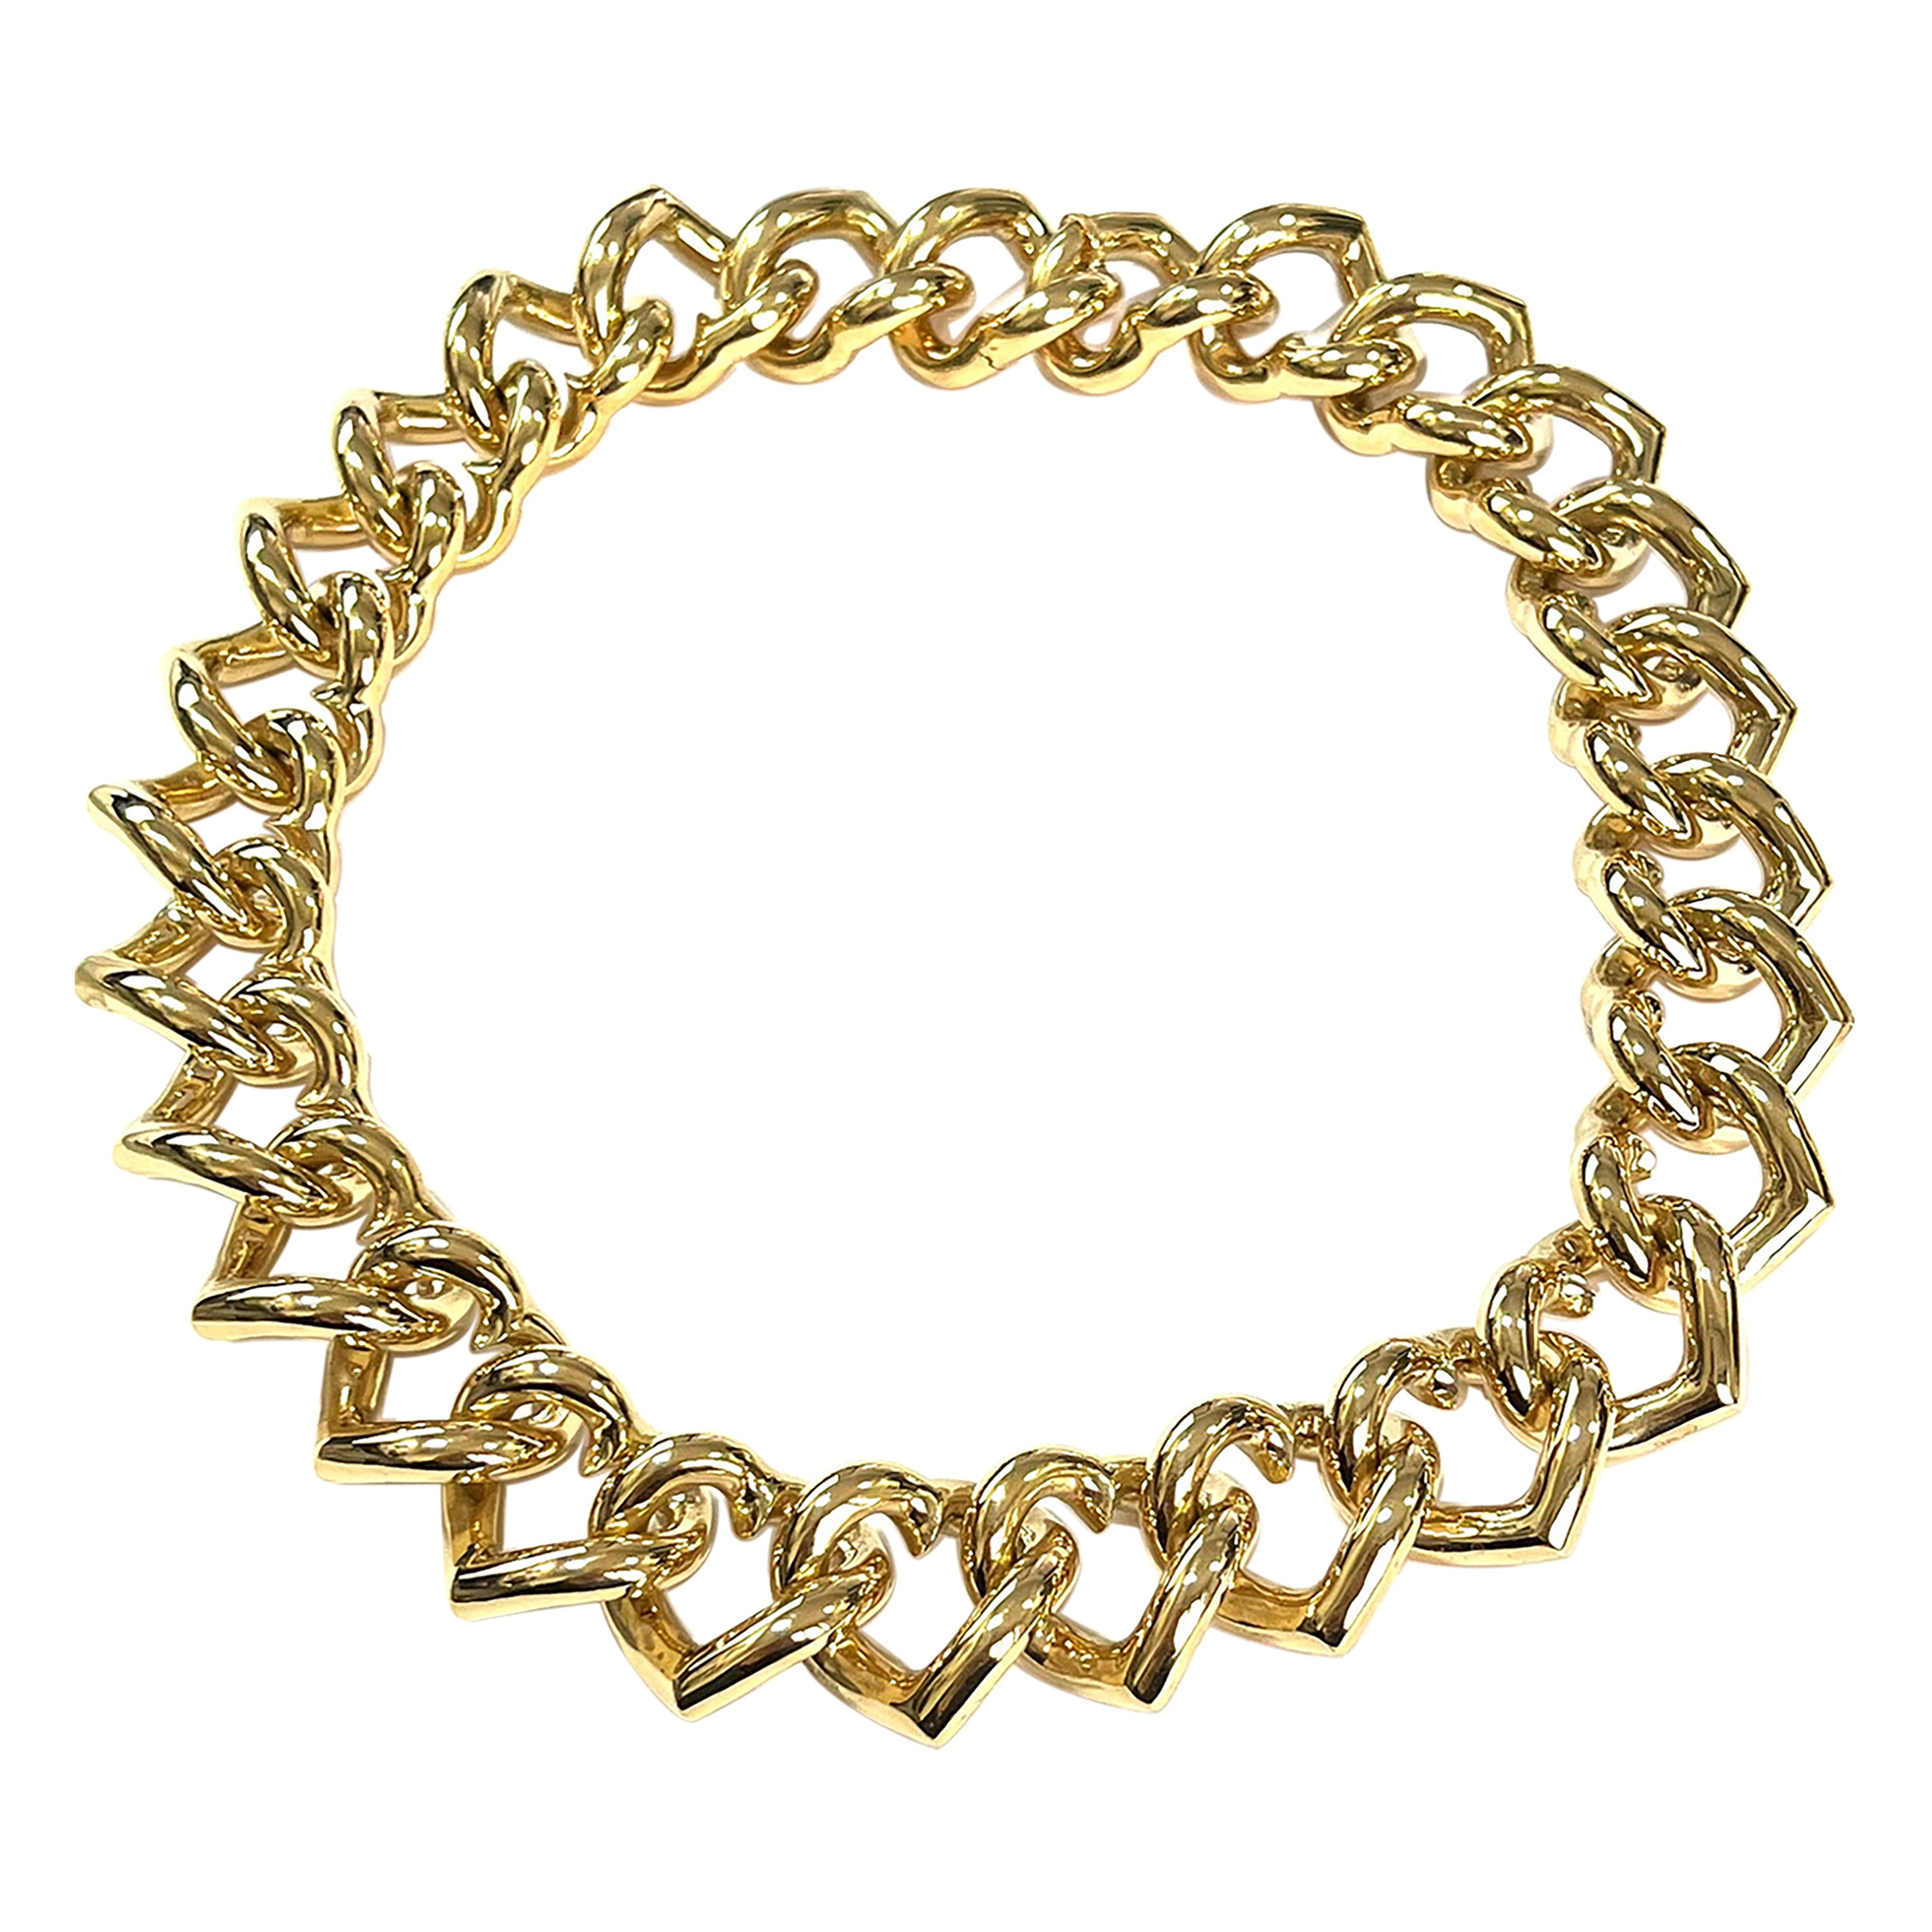 18k Gelbgold Herz Groumette Halskette
Dies ist die kultige Micheletto-Kollektion.
Gesamtgewicht Gold gr. 123,3
Länge cm. 42
Briefmarke 750  10MI ITALIEN
